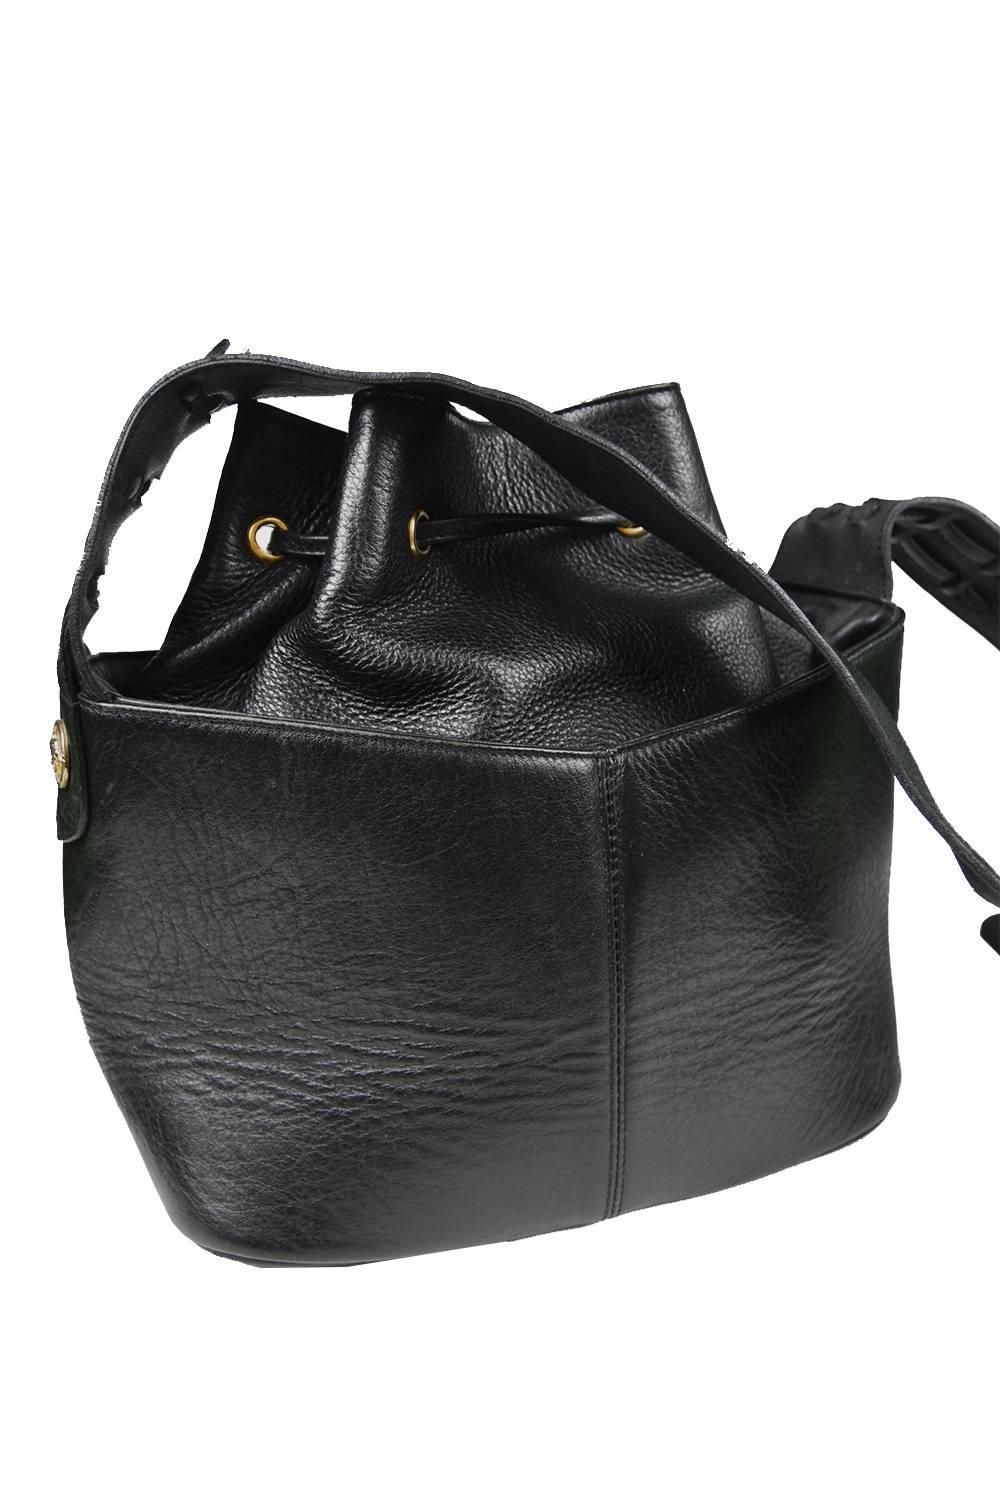 Gianni Versace Vintage 1990s Black Leather Gold & Silver Drawstring Shoulder Bag 3